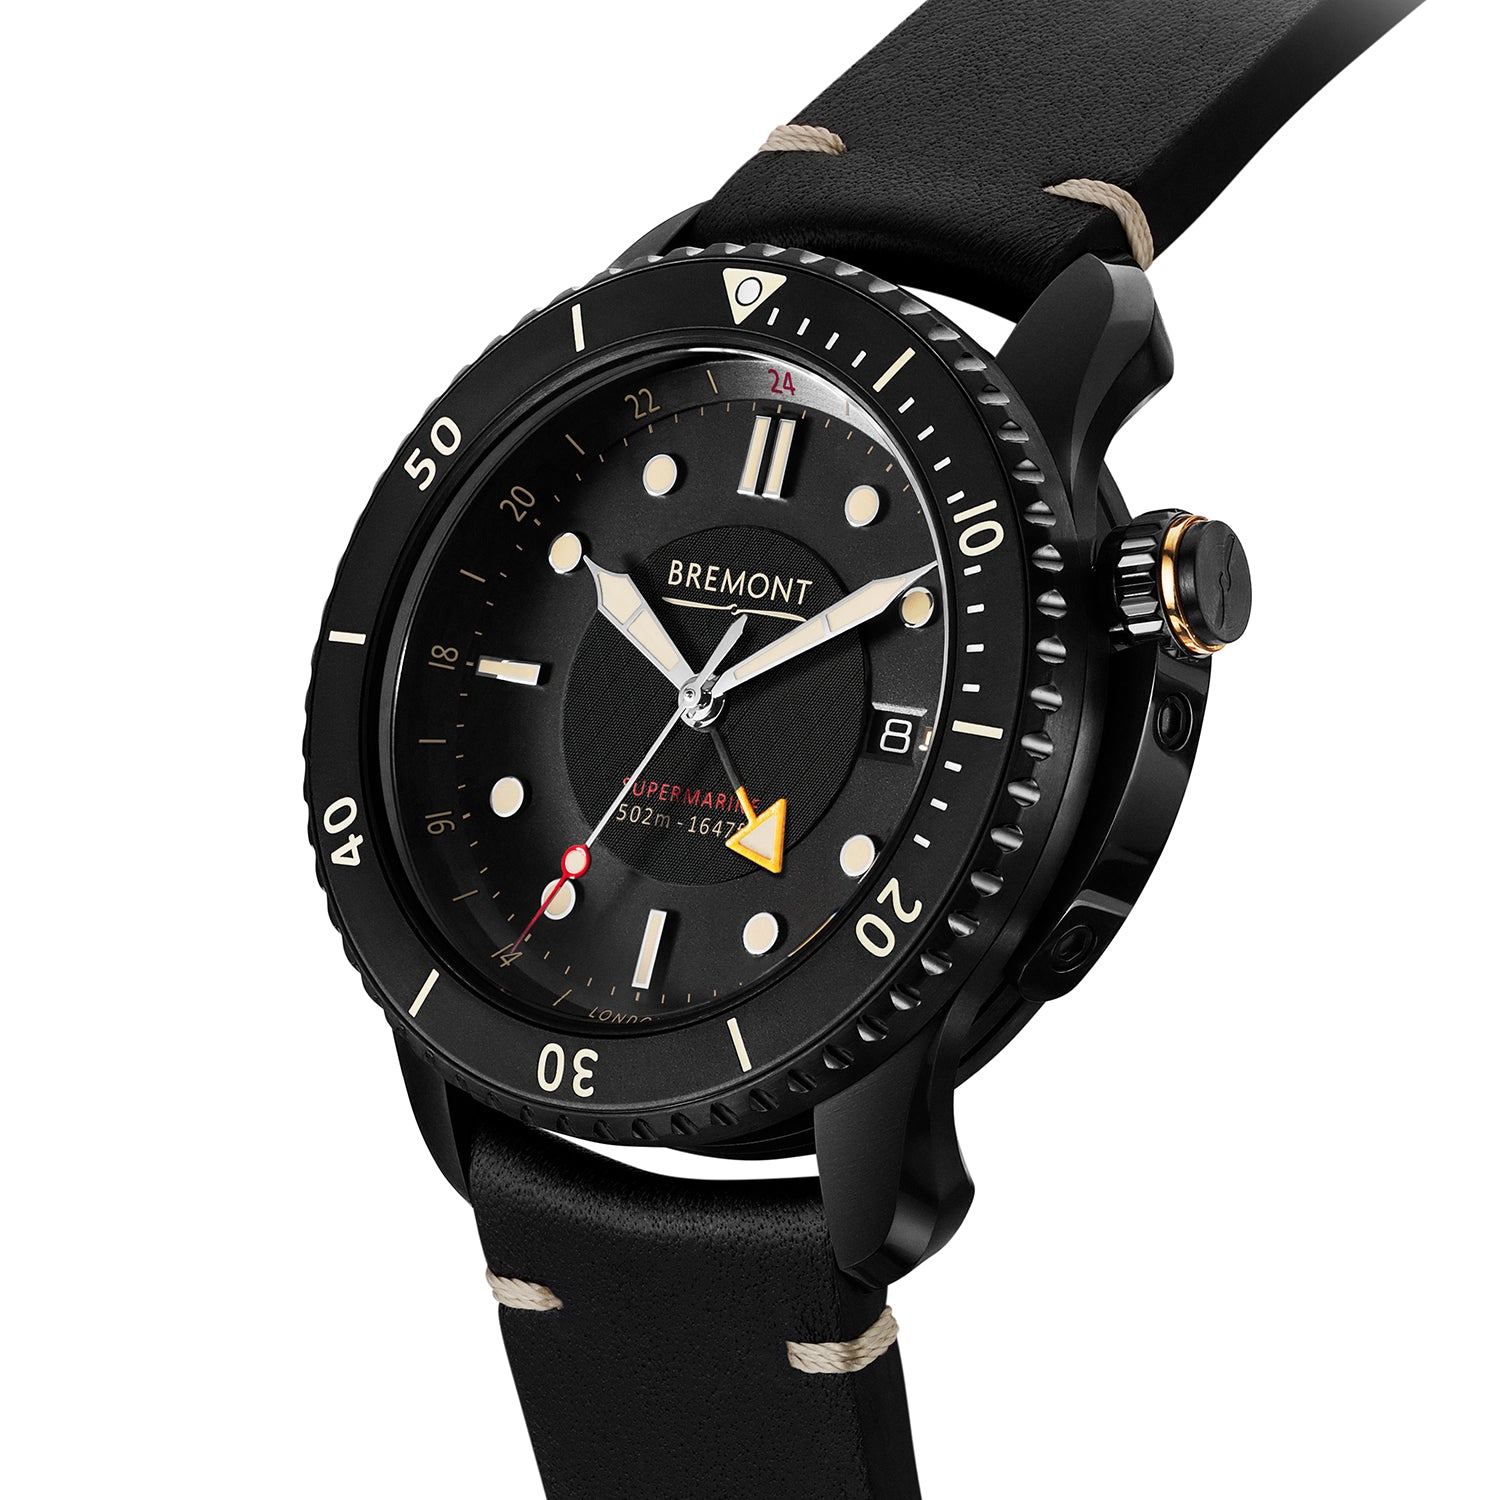 Supermarine S502 Jet DLC Diving Watch